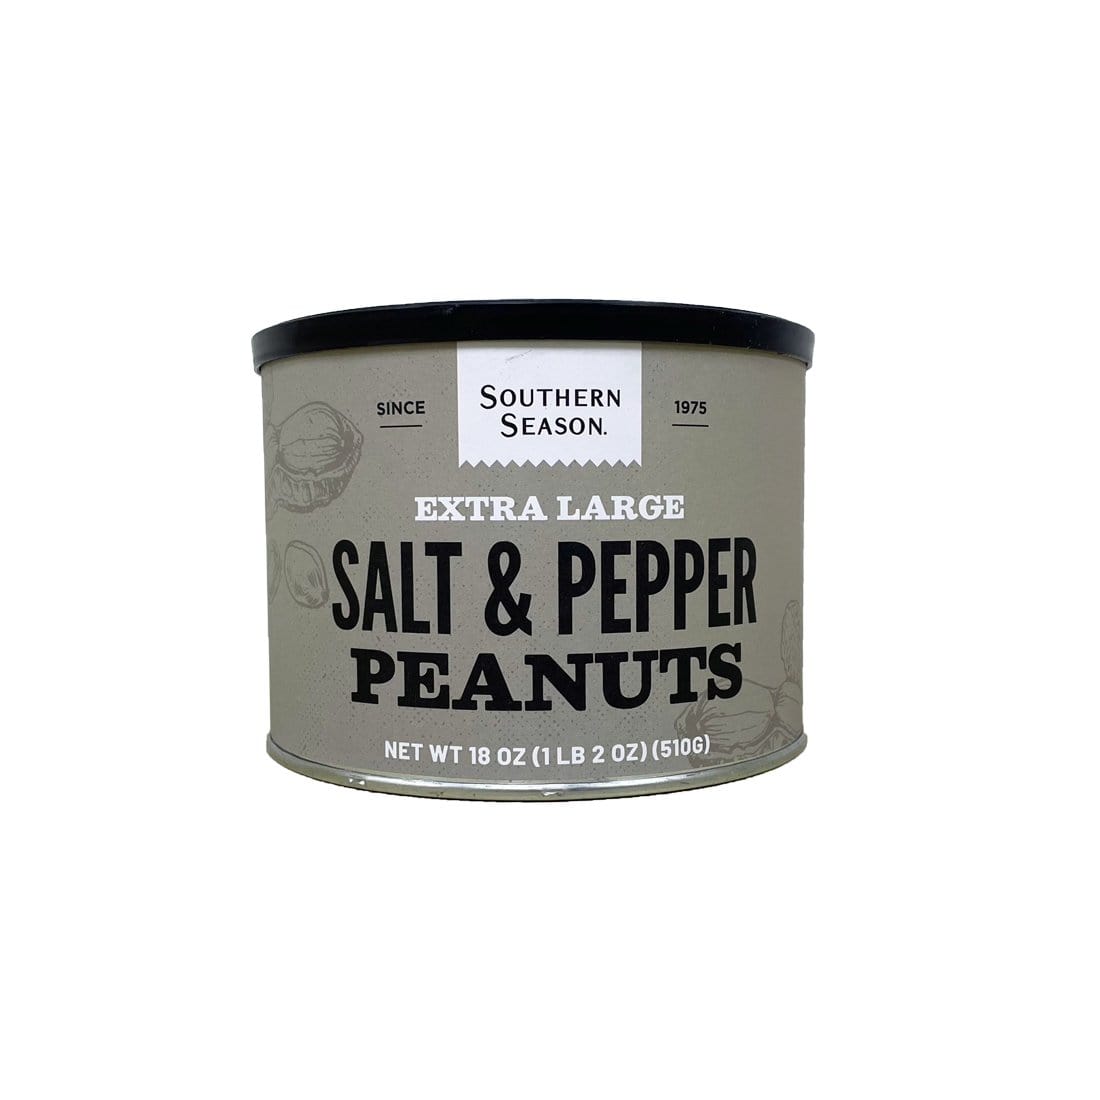 Southern Season Southern Season Salt & Pepper Peanuts 18 oz